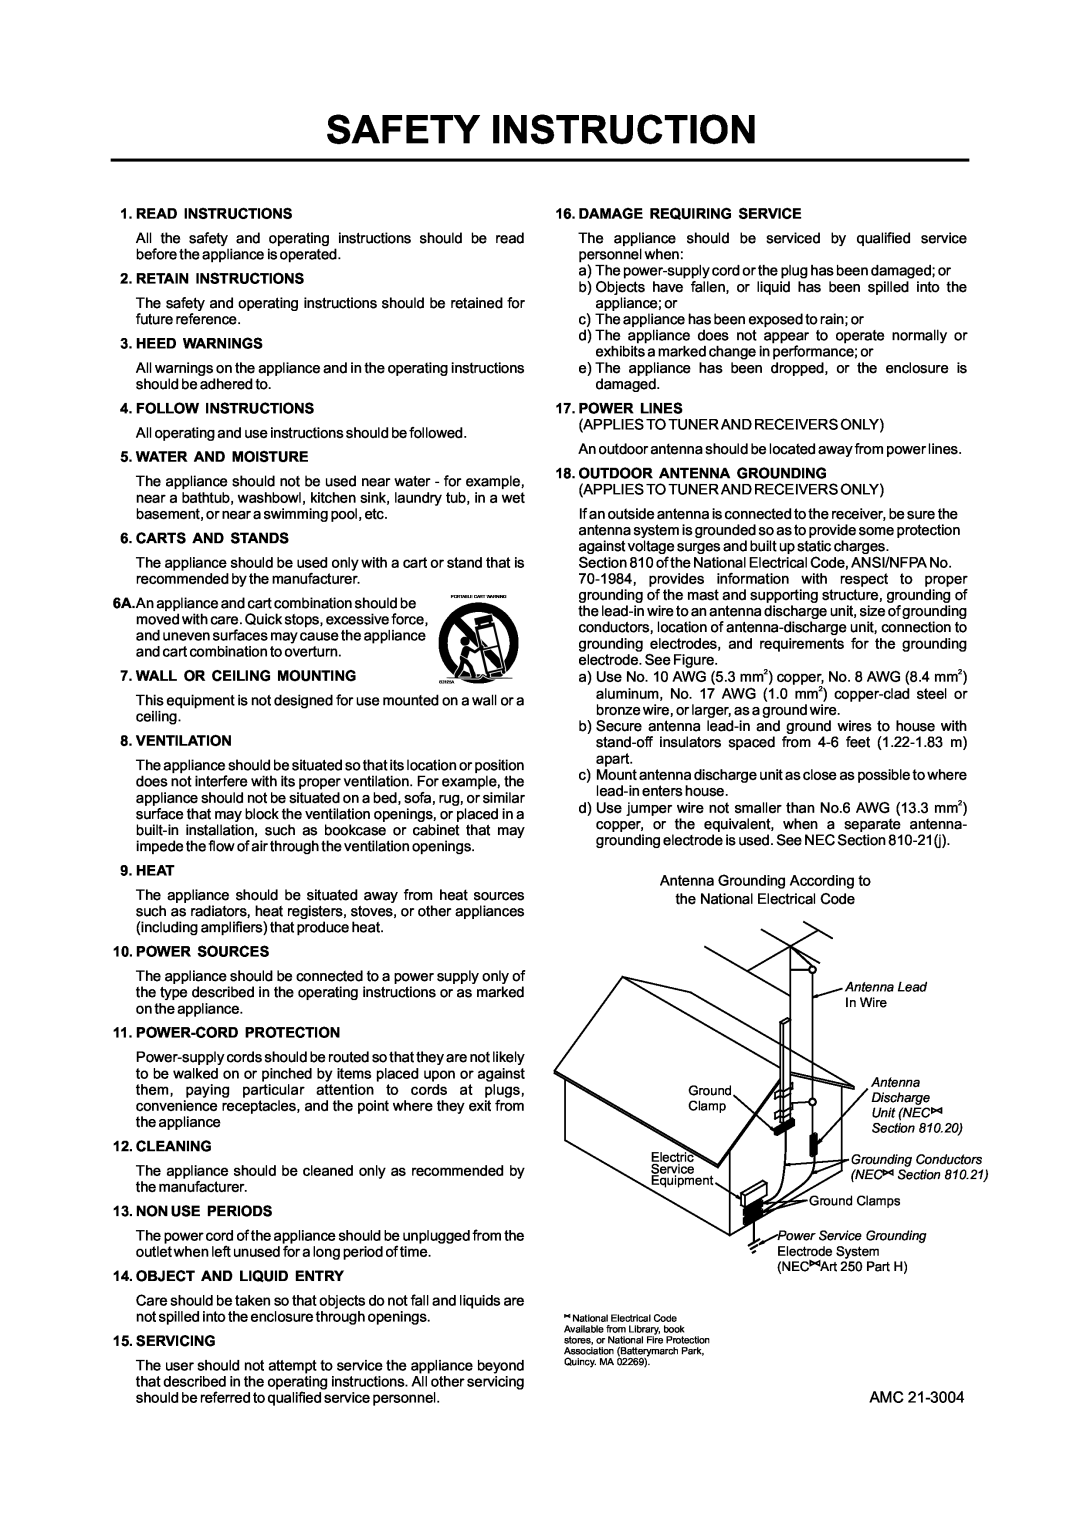 AMC S84d manual Read Instructions 